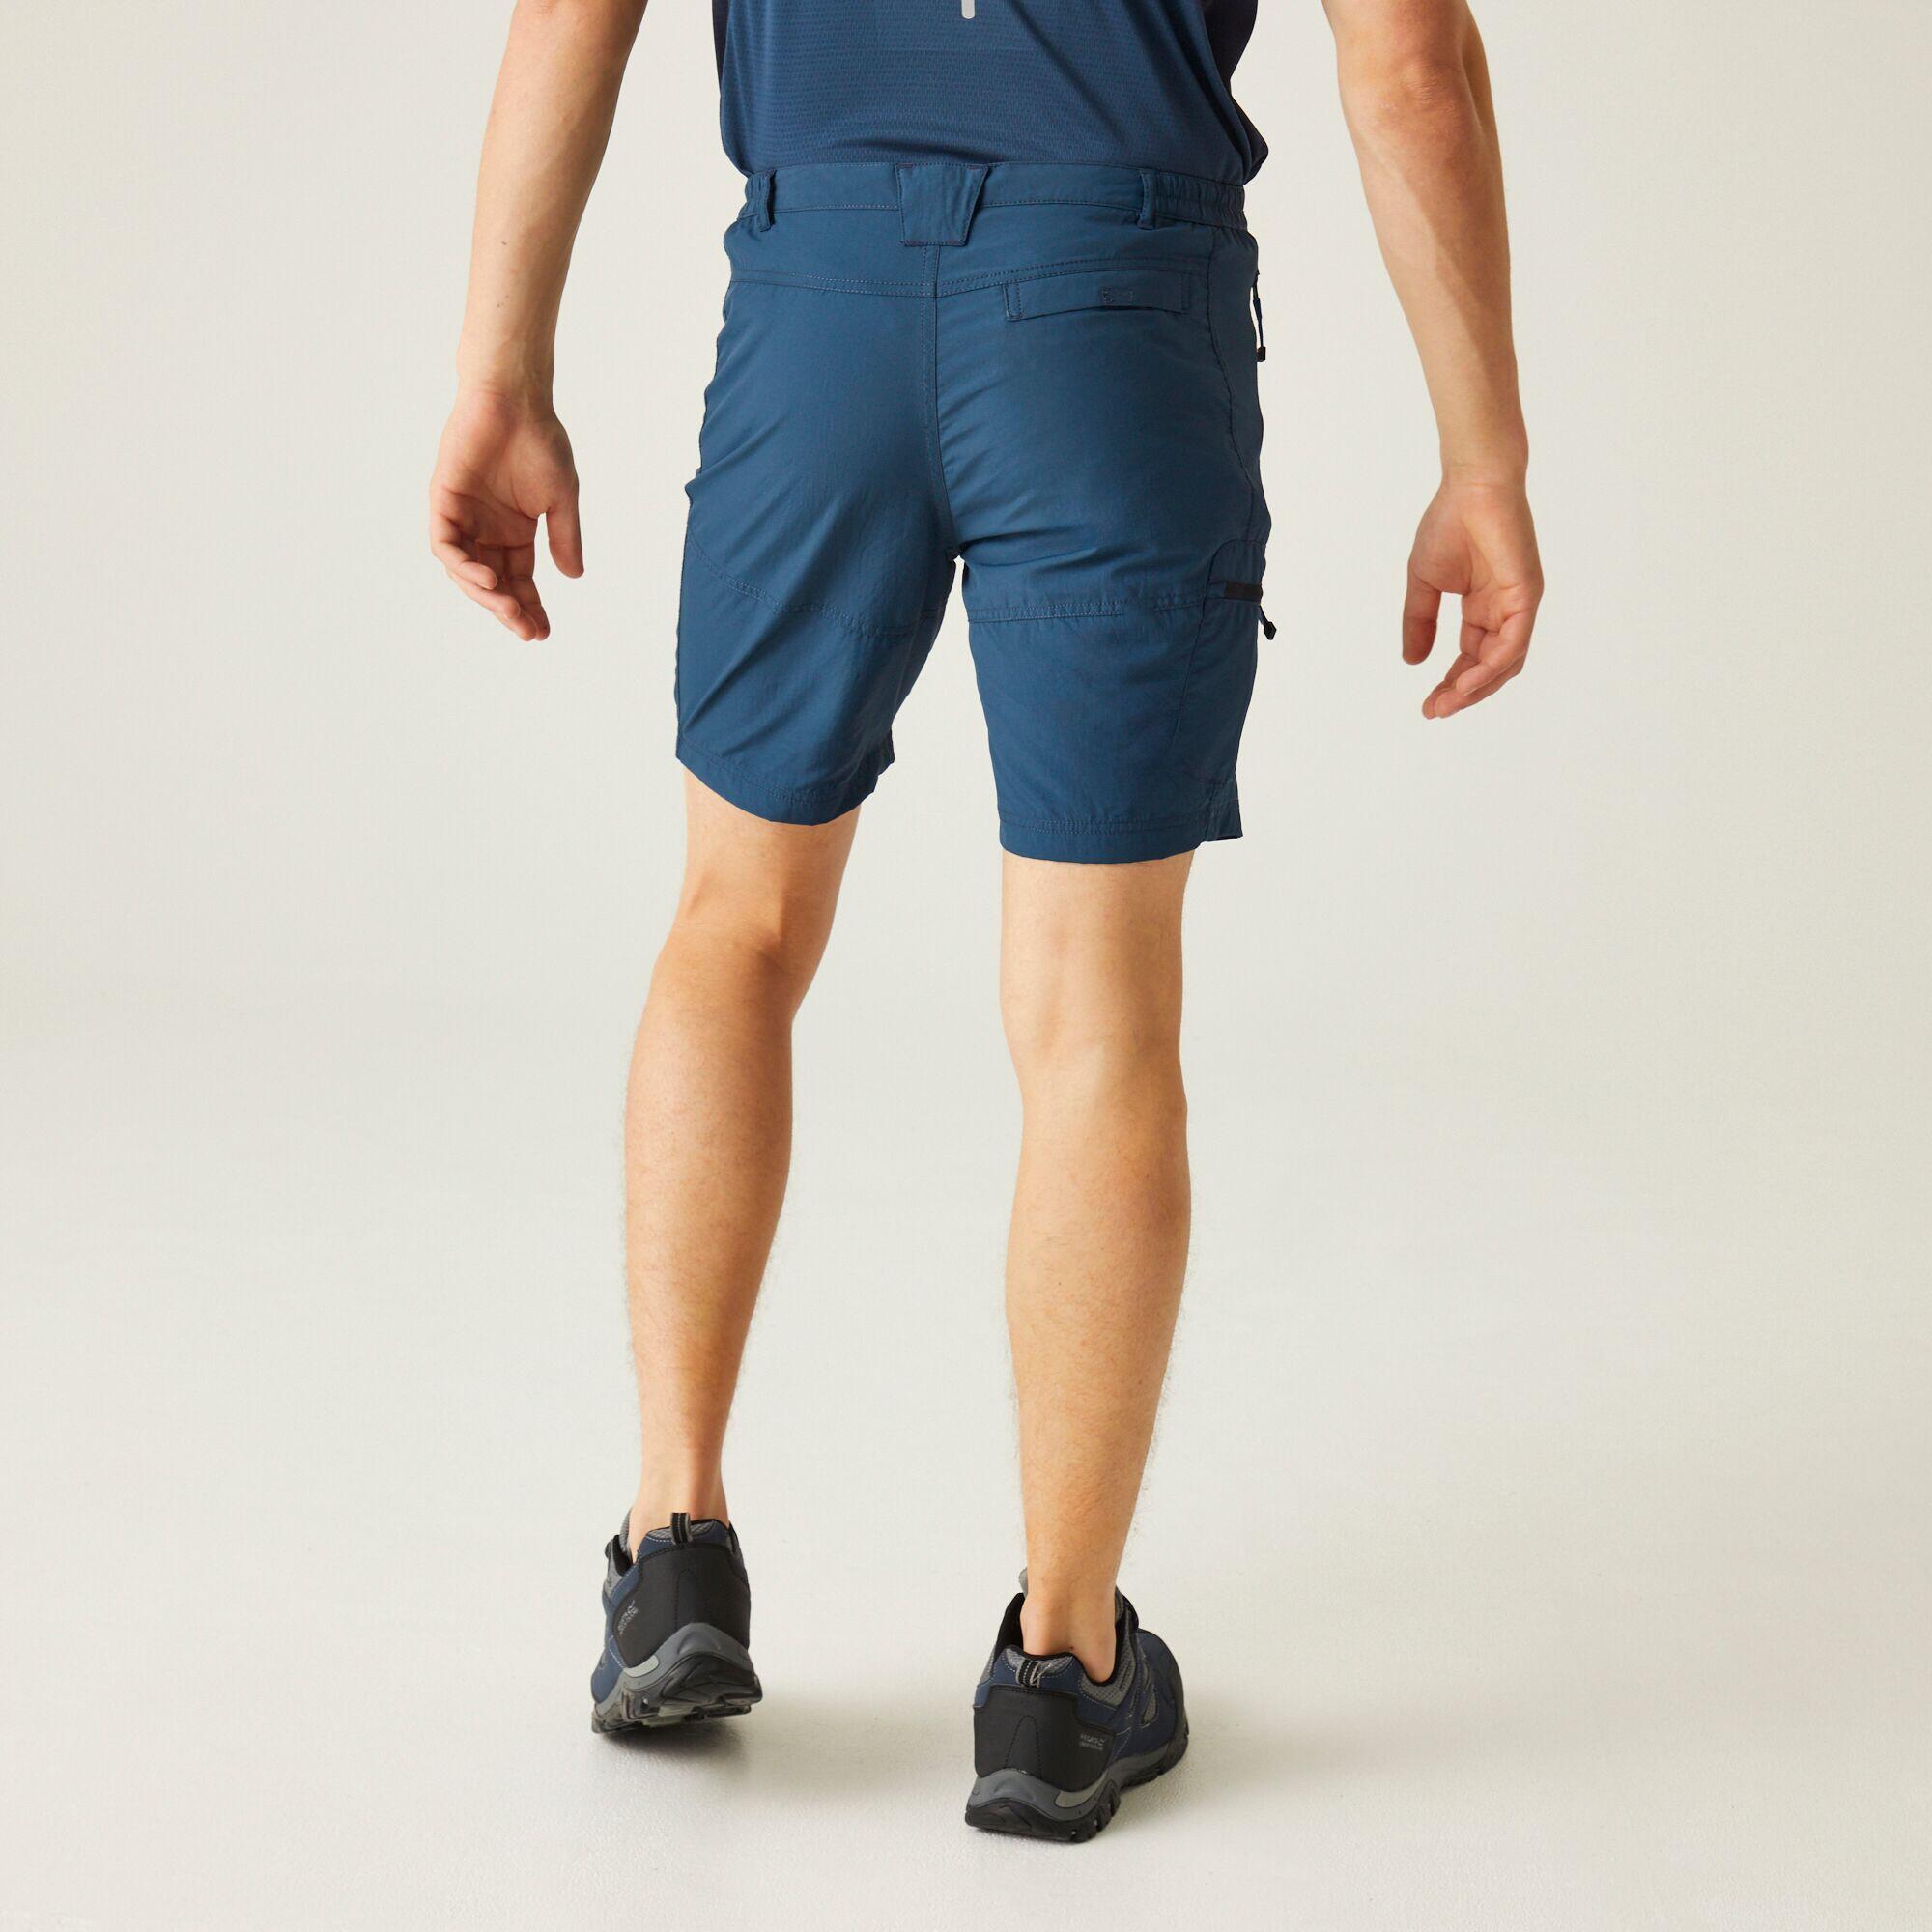 Leesville II Men's Hiking Shorts - Moonlight Denim 2/5